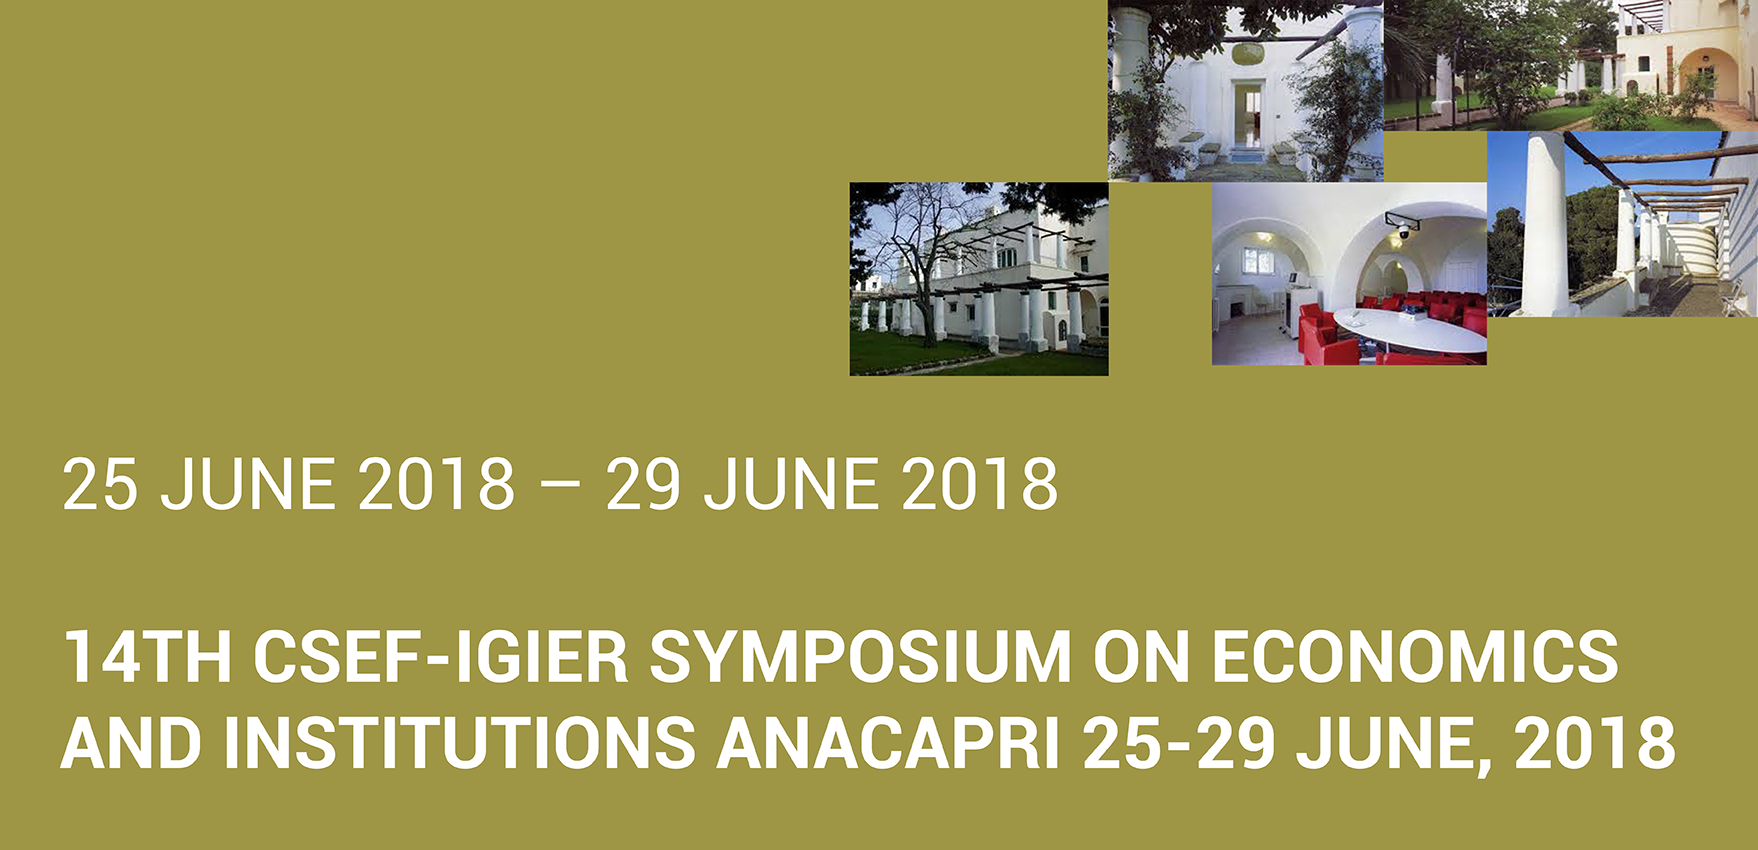 Immagine relativa al contenuto 14th Csef-Igier Symposium on Economics and Institutions